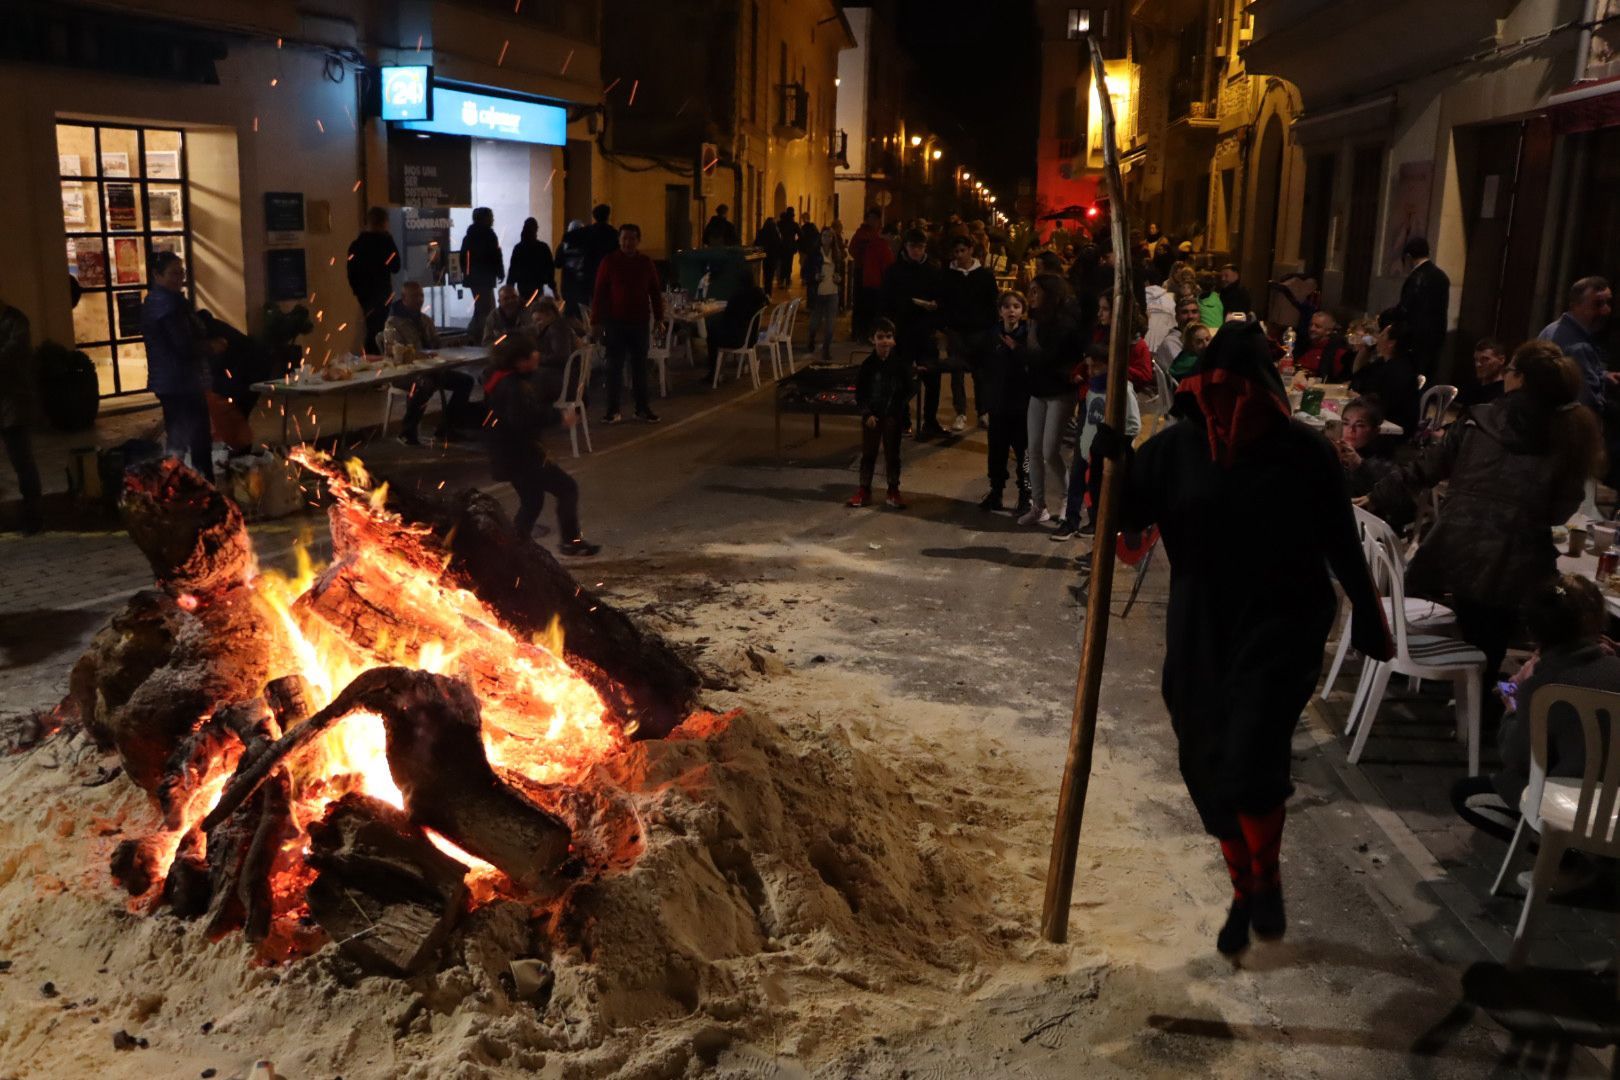 Arde la part forana: Las imágenes de la 'revetla' en distintos municipios de Mallorca